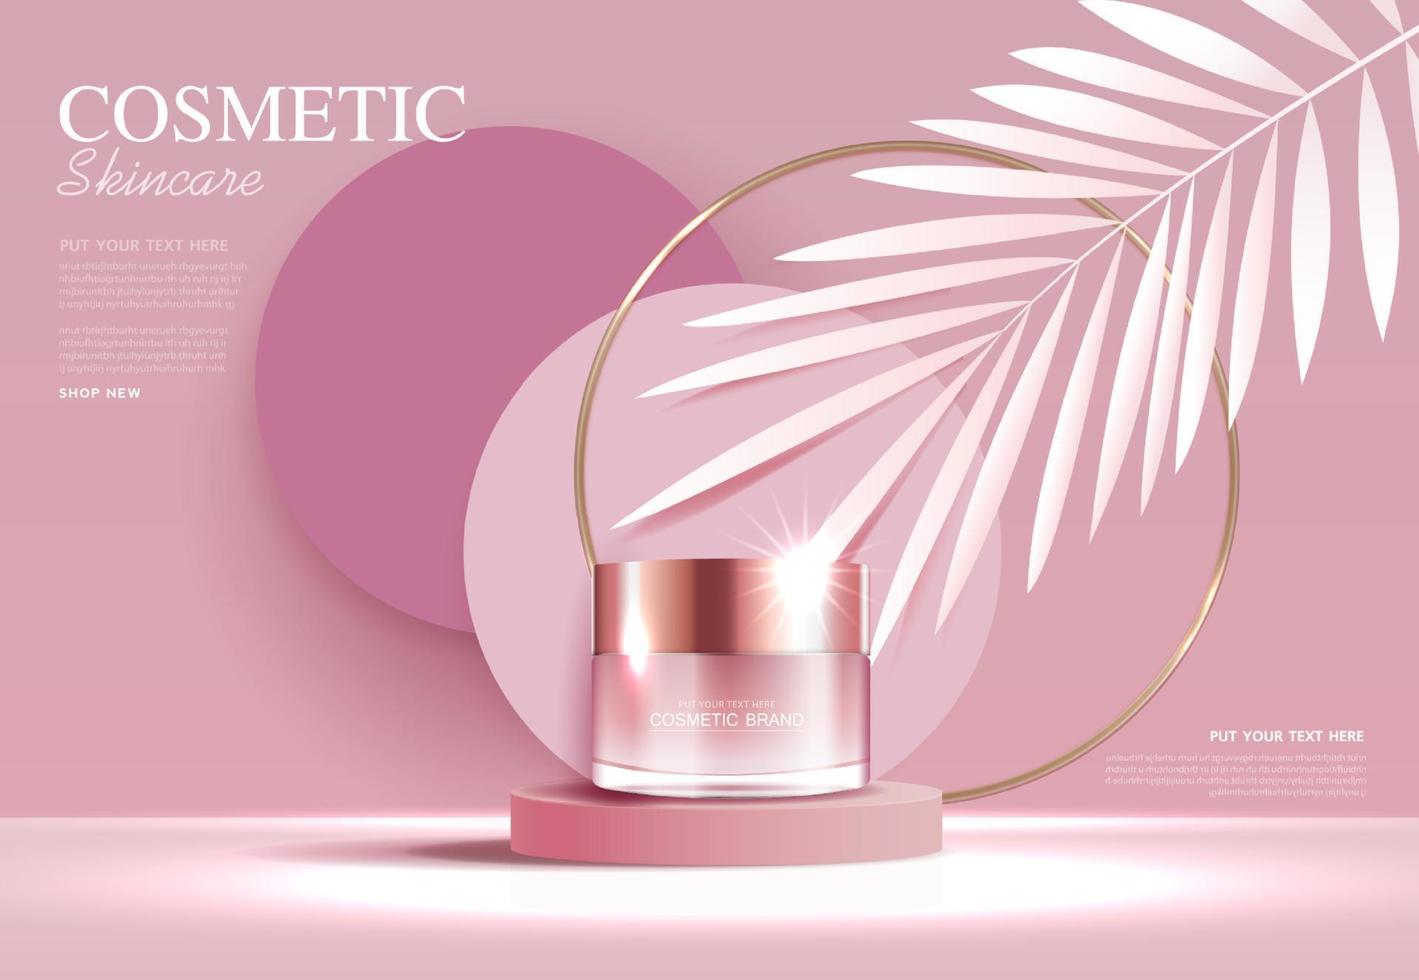 kosmetika eller hudvårdsprodukter annonser med flaska, bannerannons för skönhetsprodukter, rosa och löv bakgrund glittrande ljuseffekt. vektor design